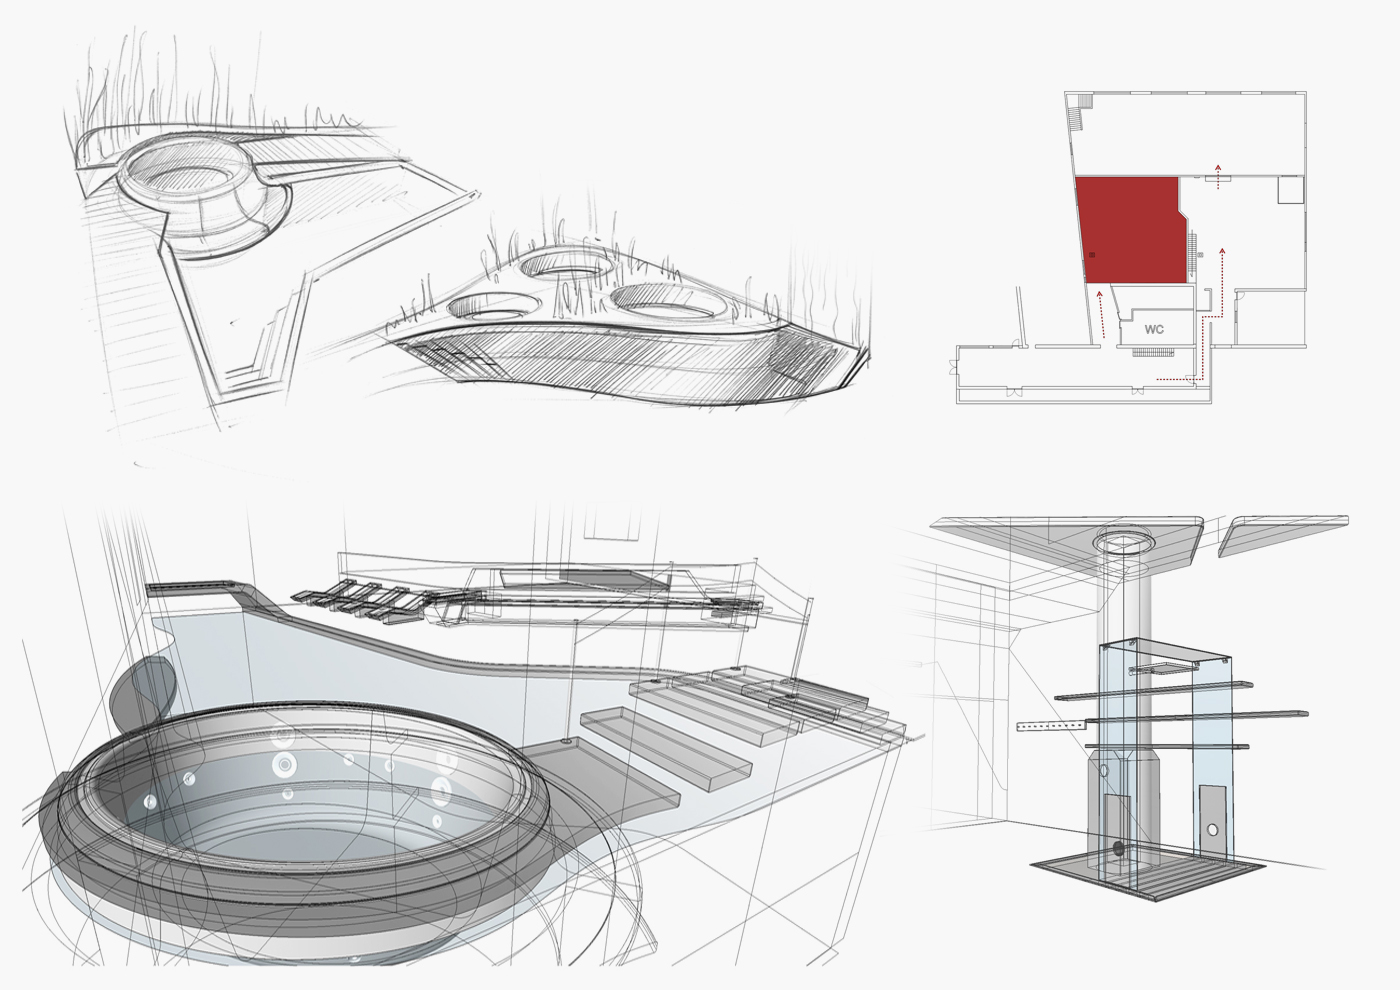 Maggiora automobili - interior design - Industry reassessment - wellness area1 - Davide Mezzasalma - Furniture design - Berlin